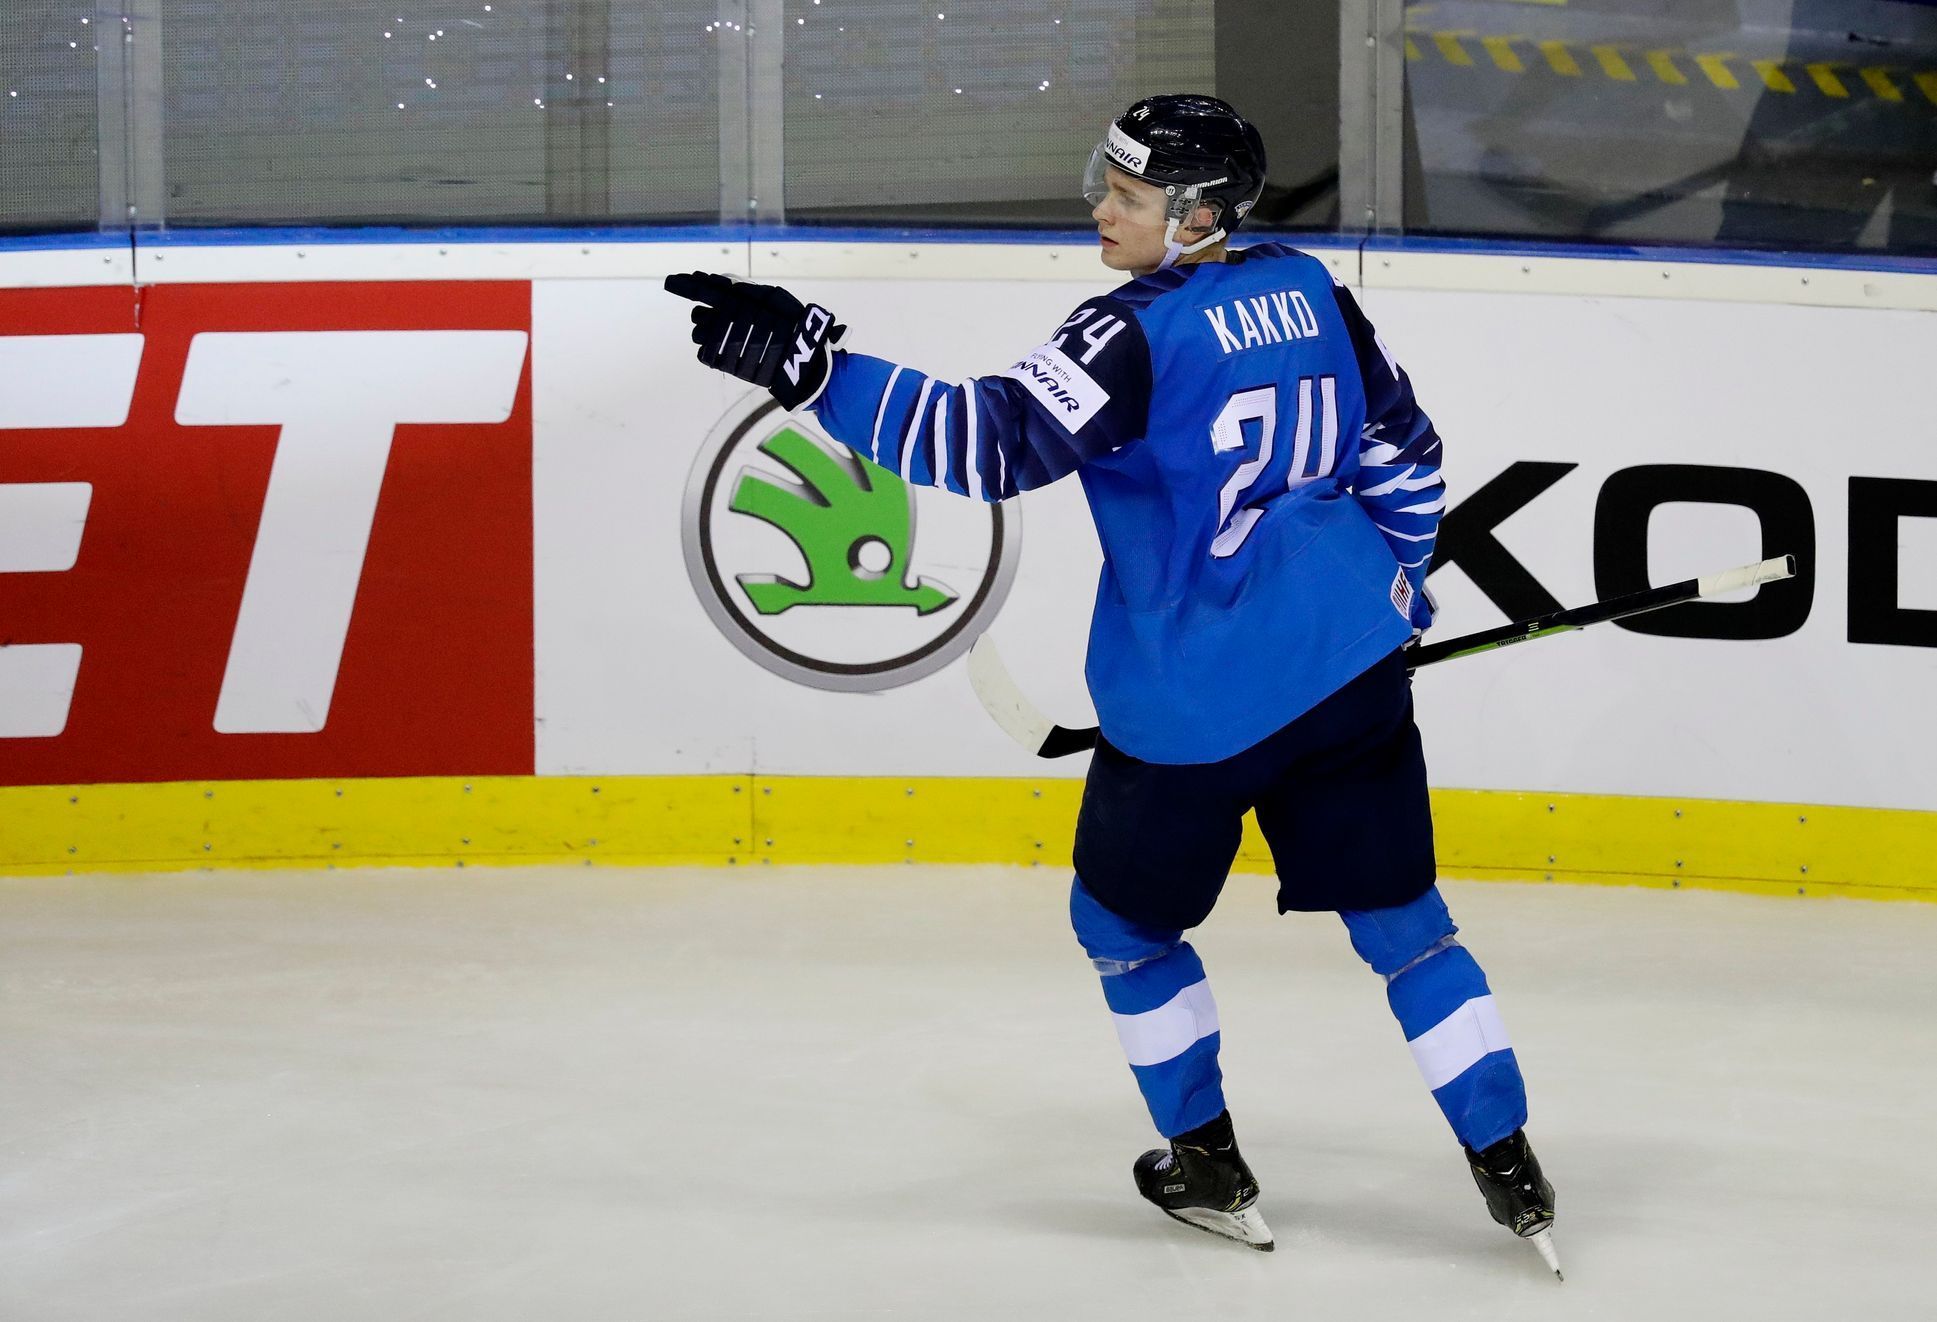 MS 2019, finská hokejová reprezentace